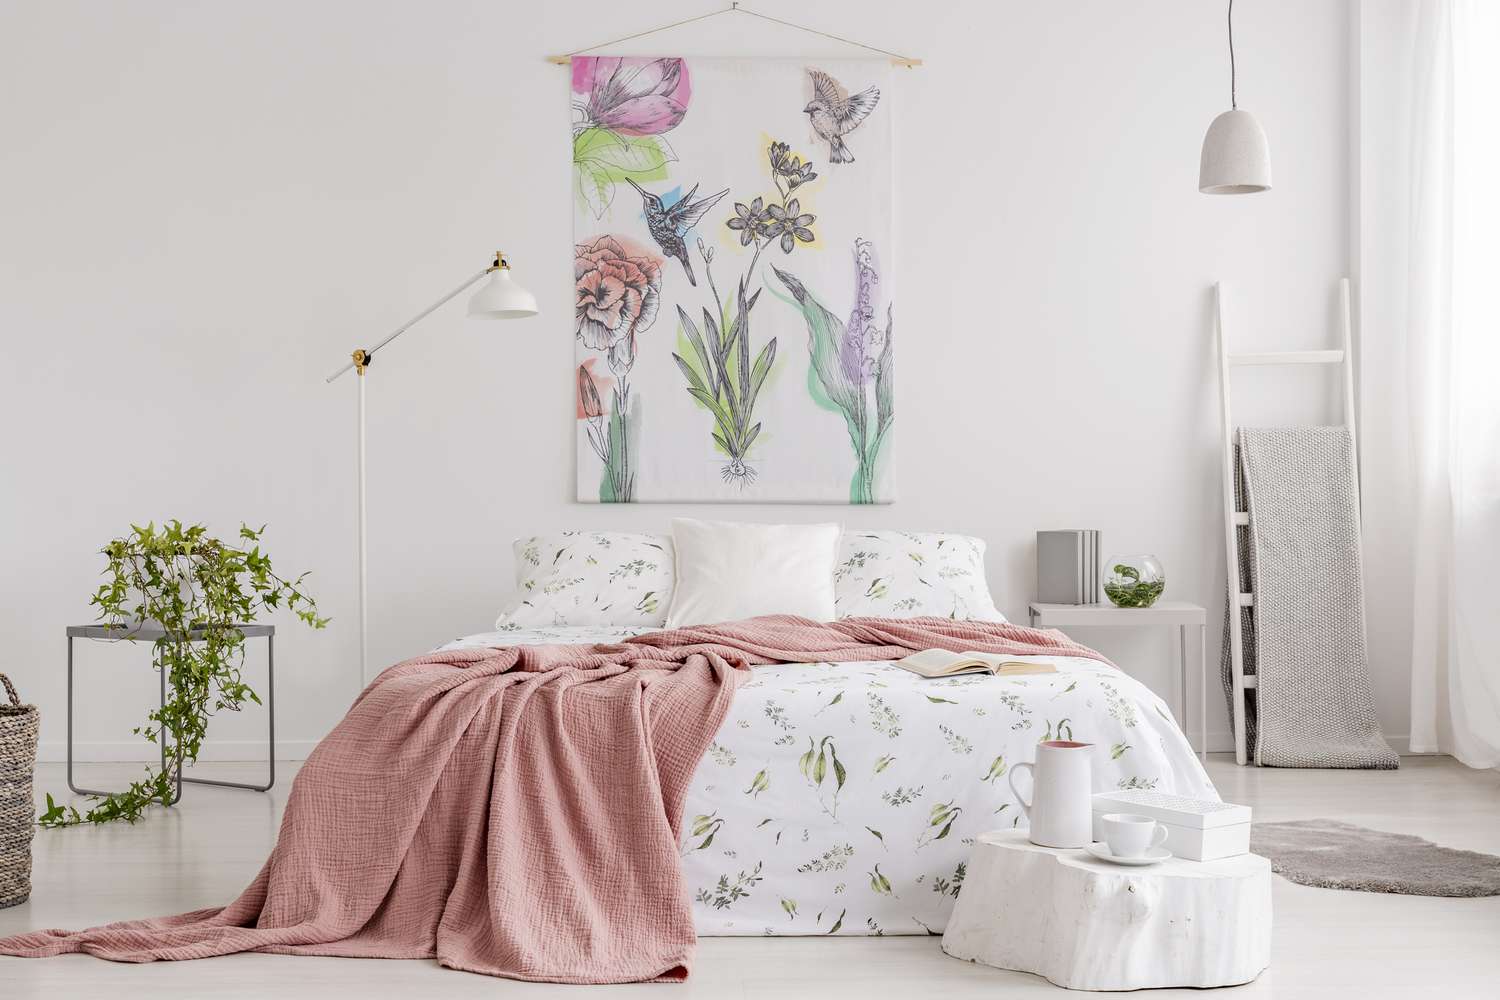 Manta de melocotón y ropa de cama blanca con estampado verde en el interior de un dormitorio luminoso y natural. Tapiz con flores de colores y colibríes en la pared del fondo.